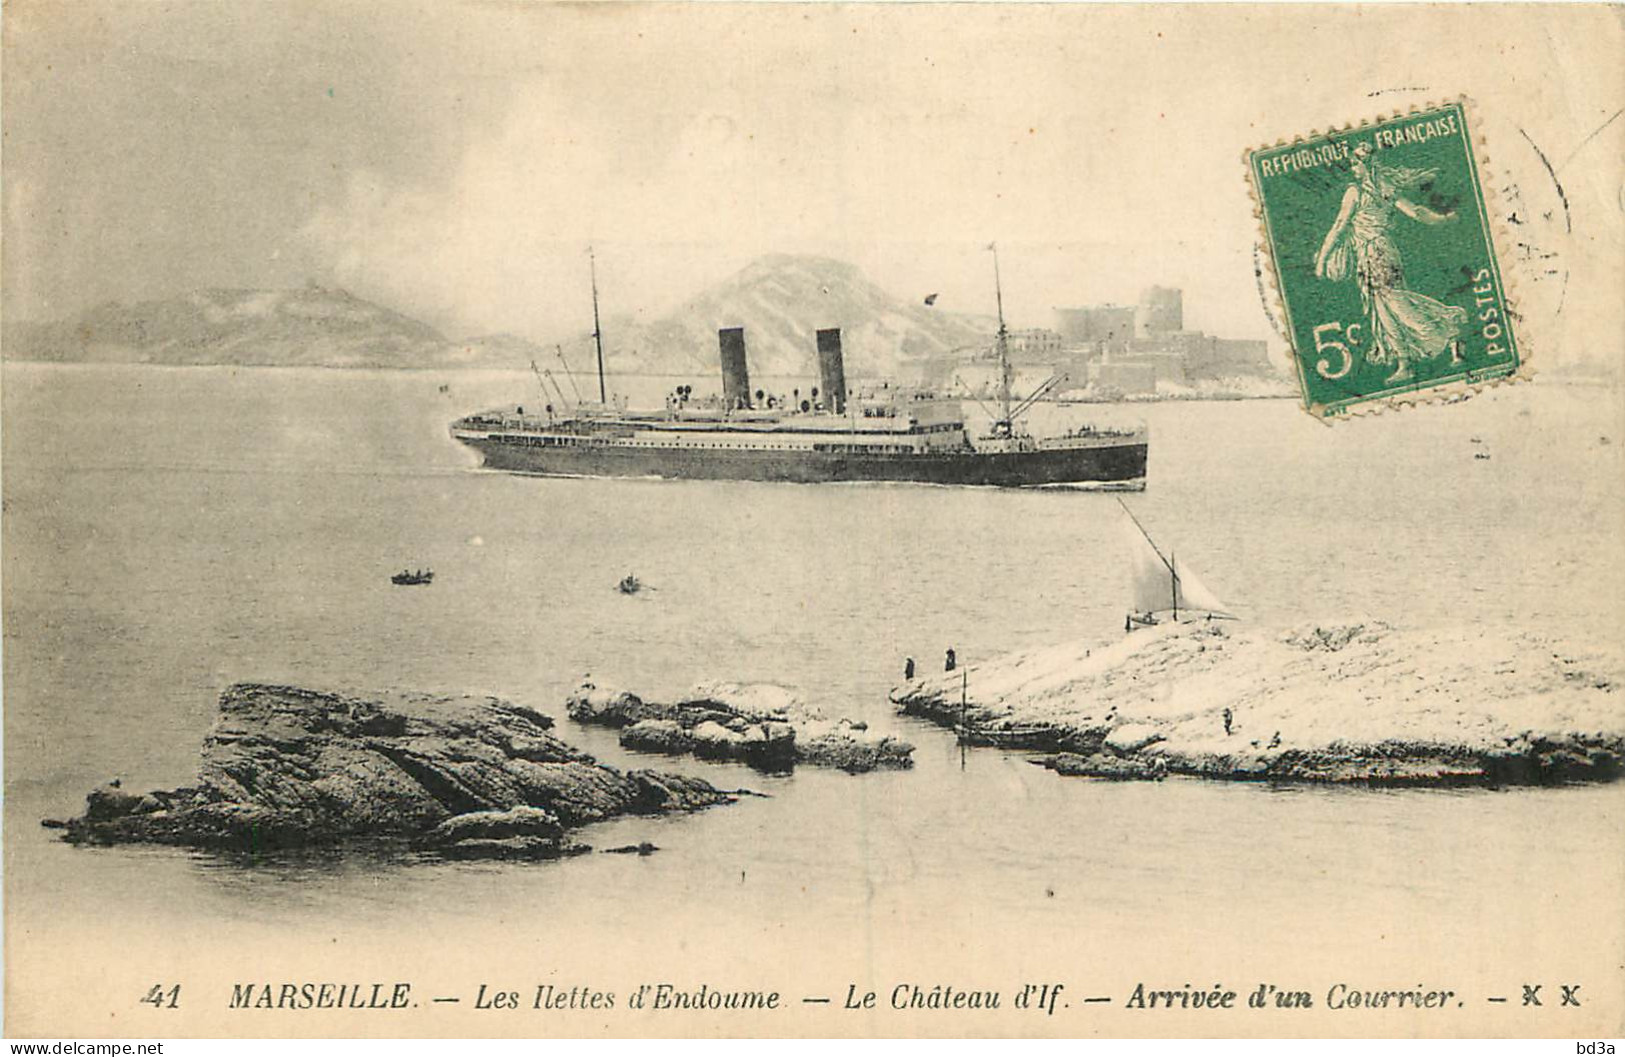 13 - MARSEILLE - LES ILETTES D'ENDOUME - LE CHATEAU D'IF - ARRIVEE D'UN COURRIER - Festung (Château D'If), Frioul, Inseln...